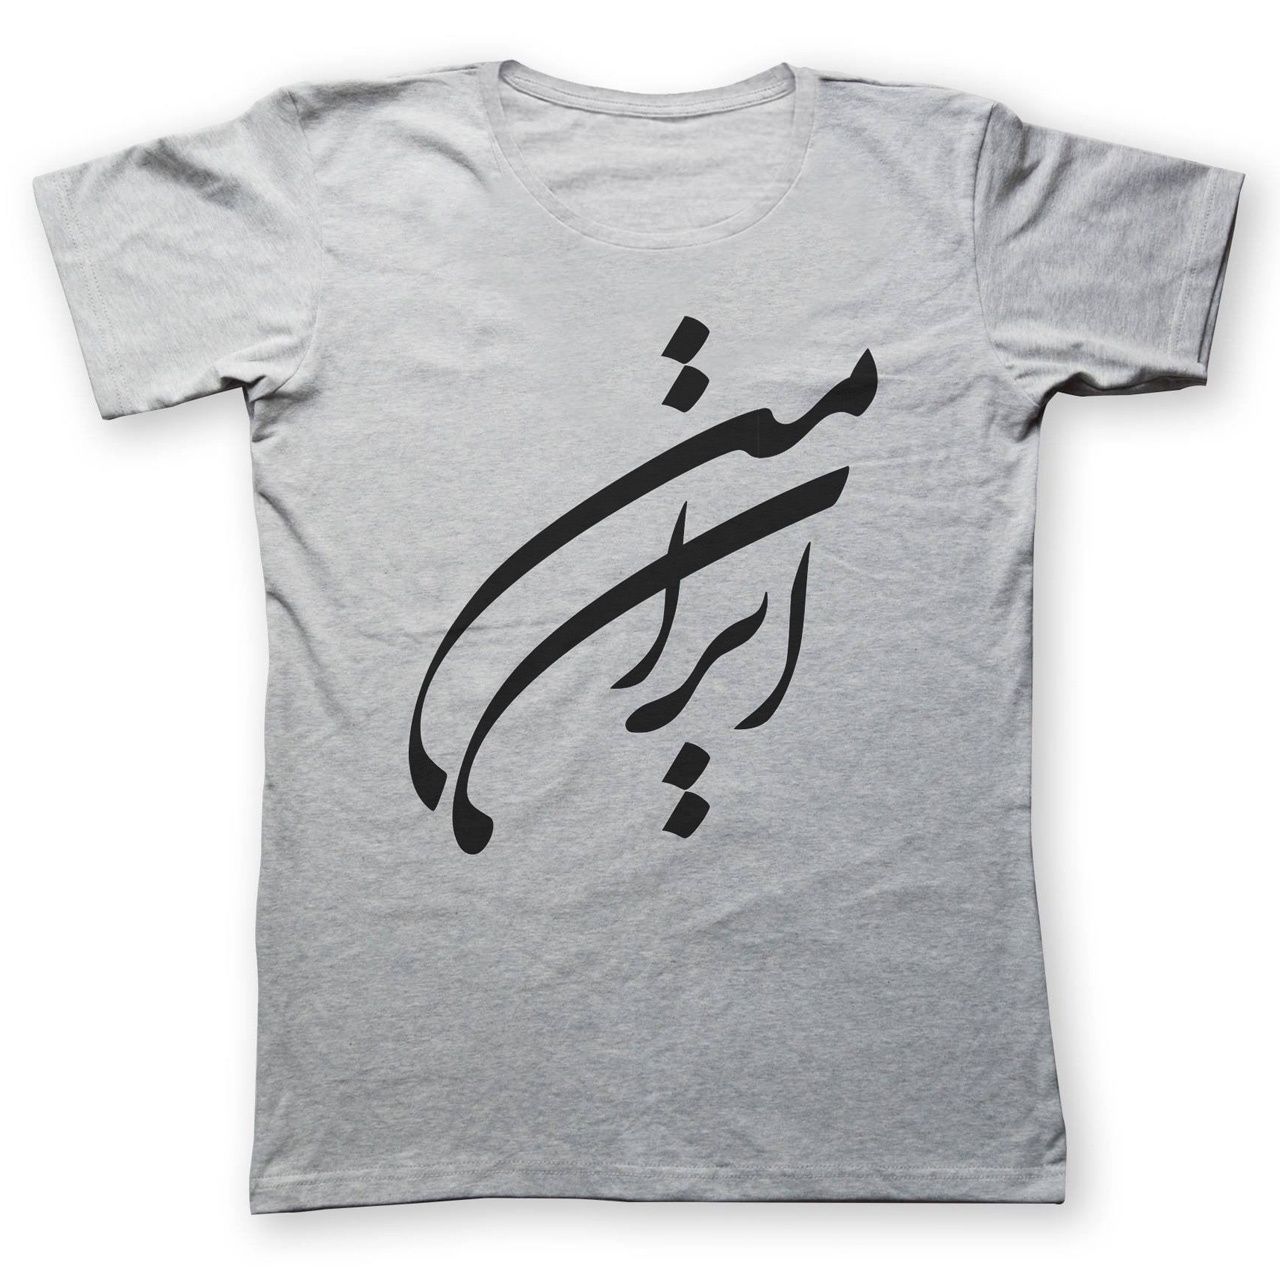 تی شرت زنانه به رسم طرح ایران من کد 420 -  - 1